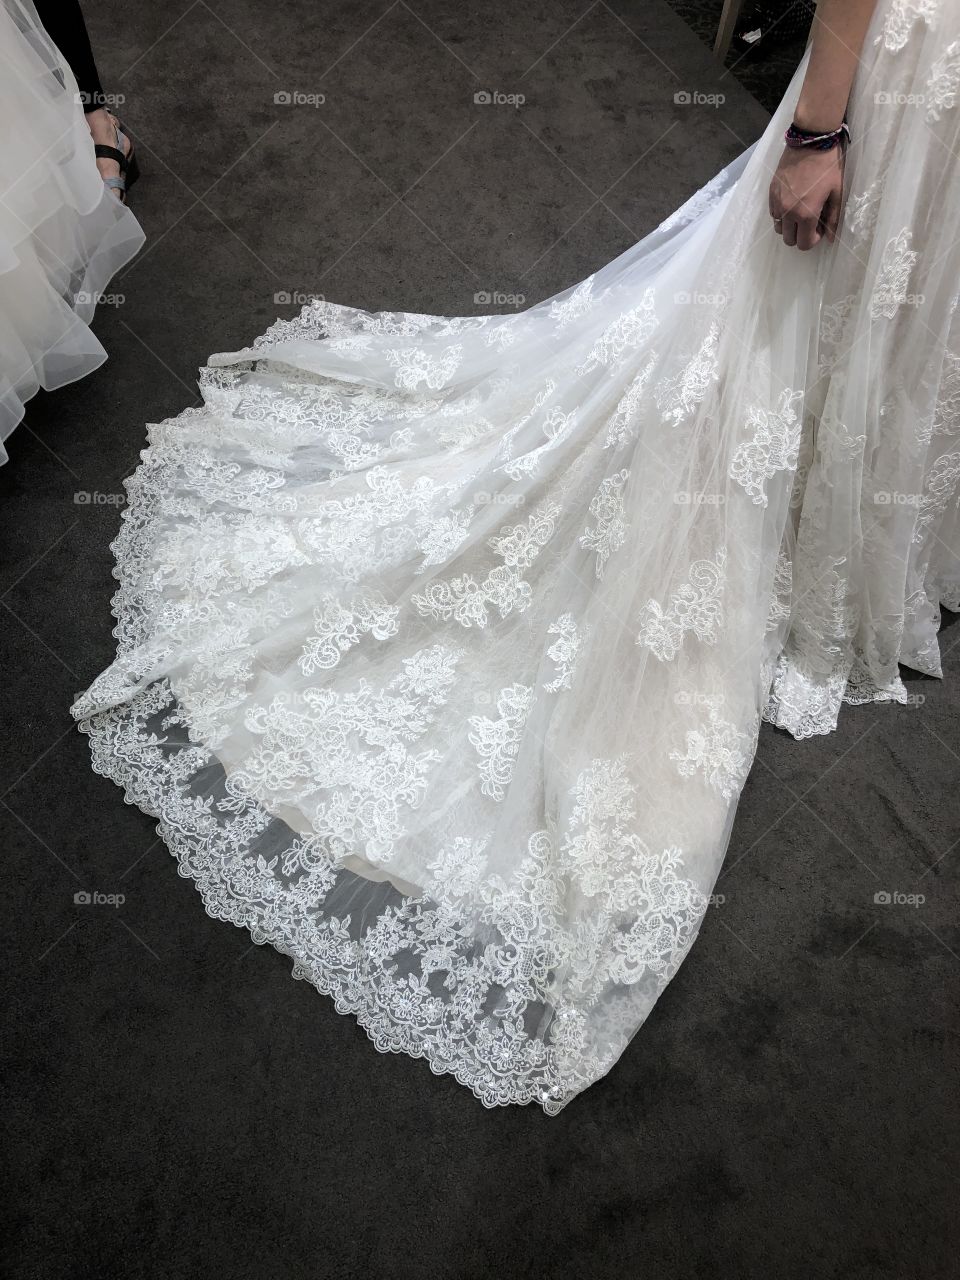 Beautiful laced wedding dress.